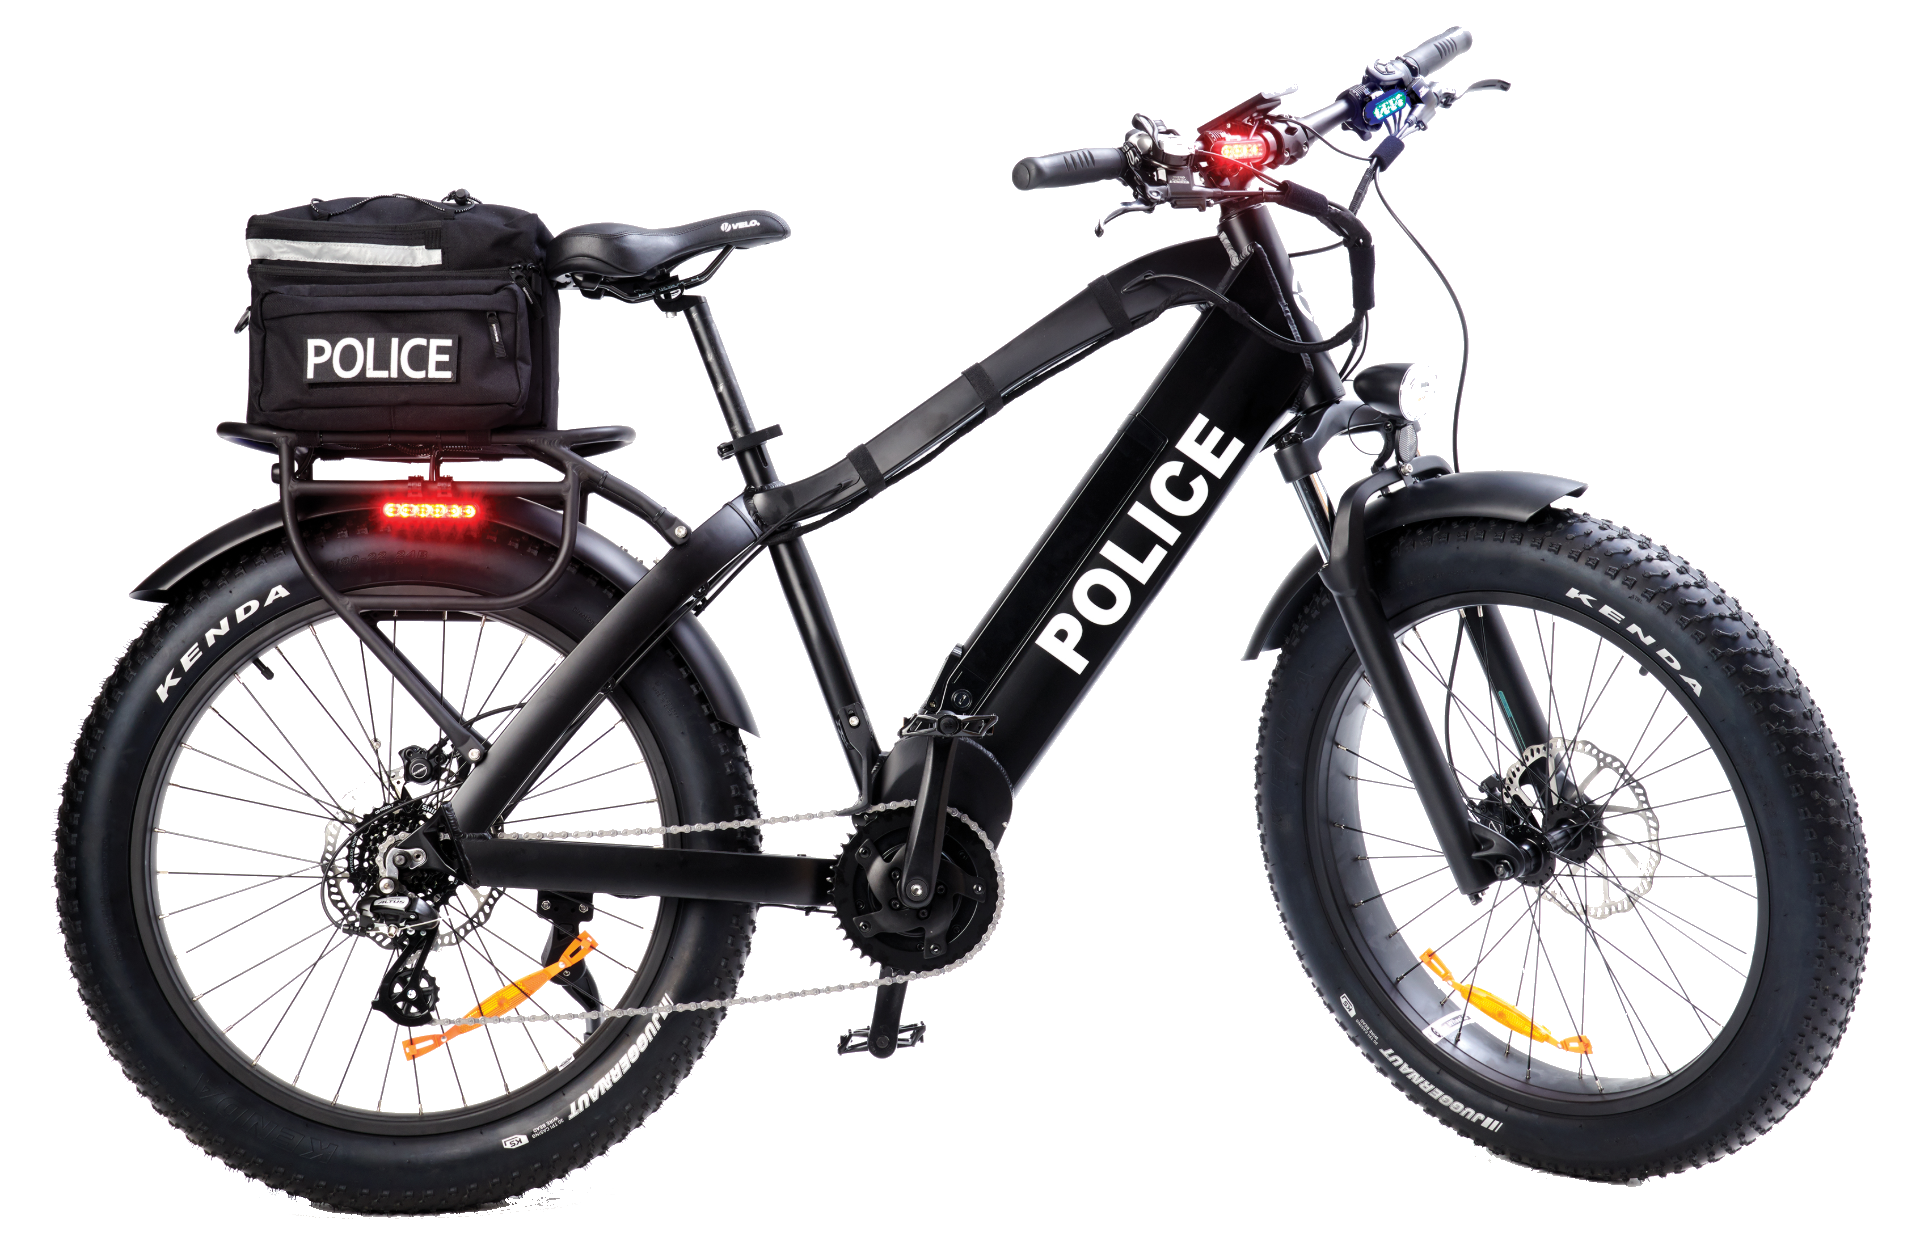 Do police check e-bikes?